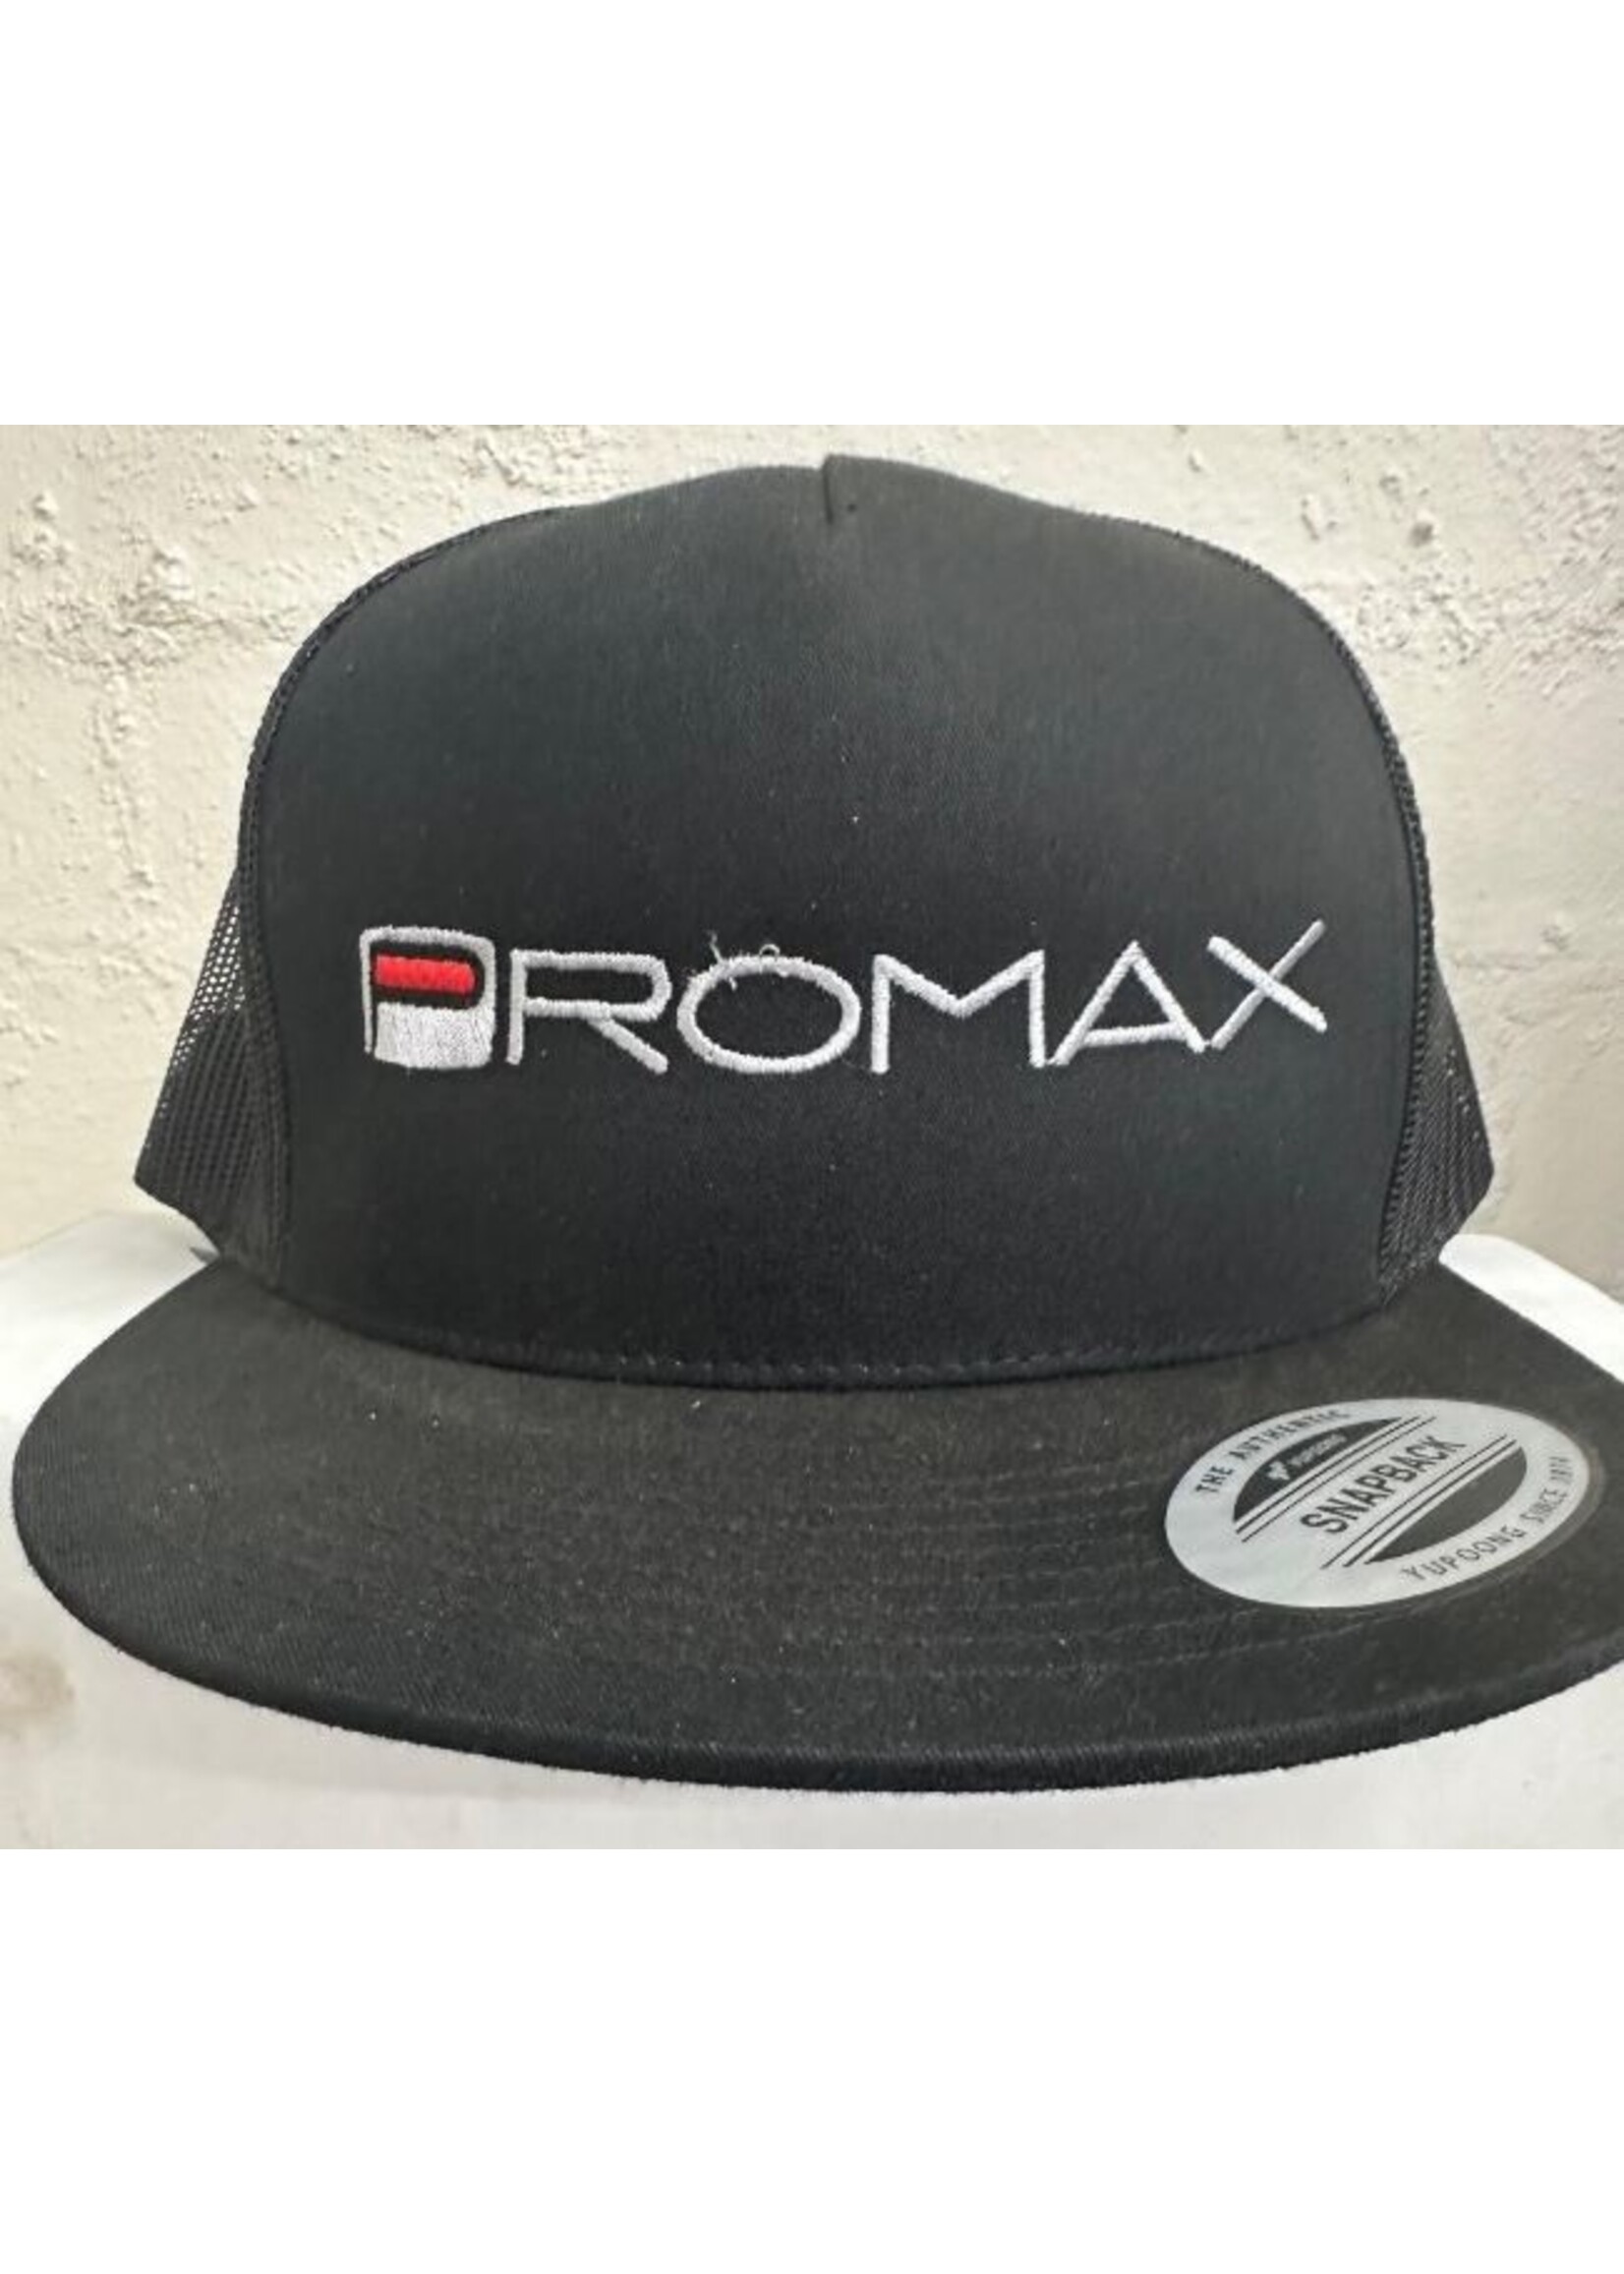 Pro Max Hat Promax Trucker Black